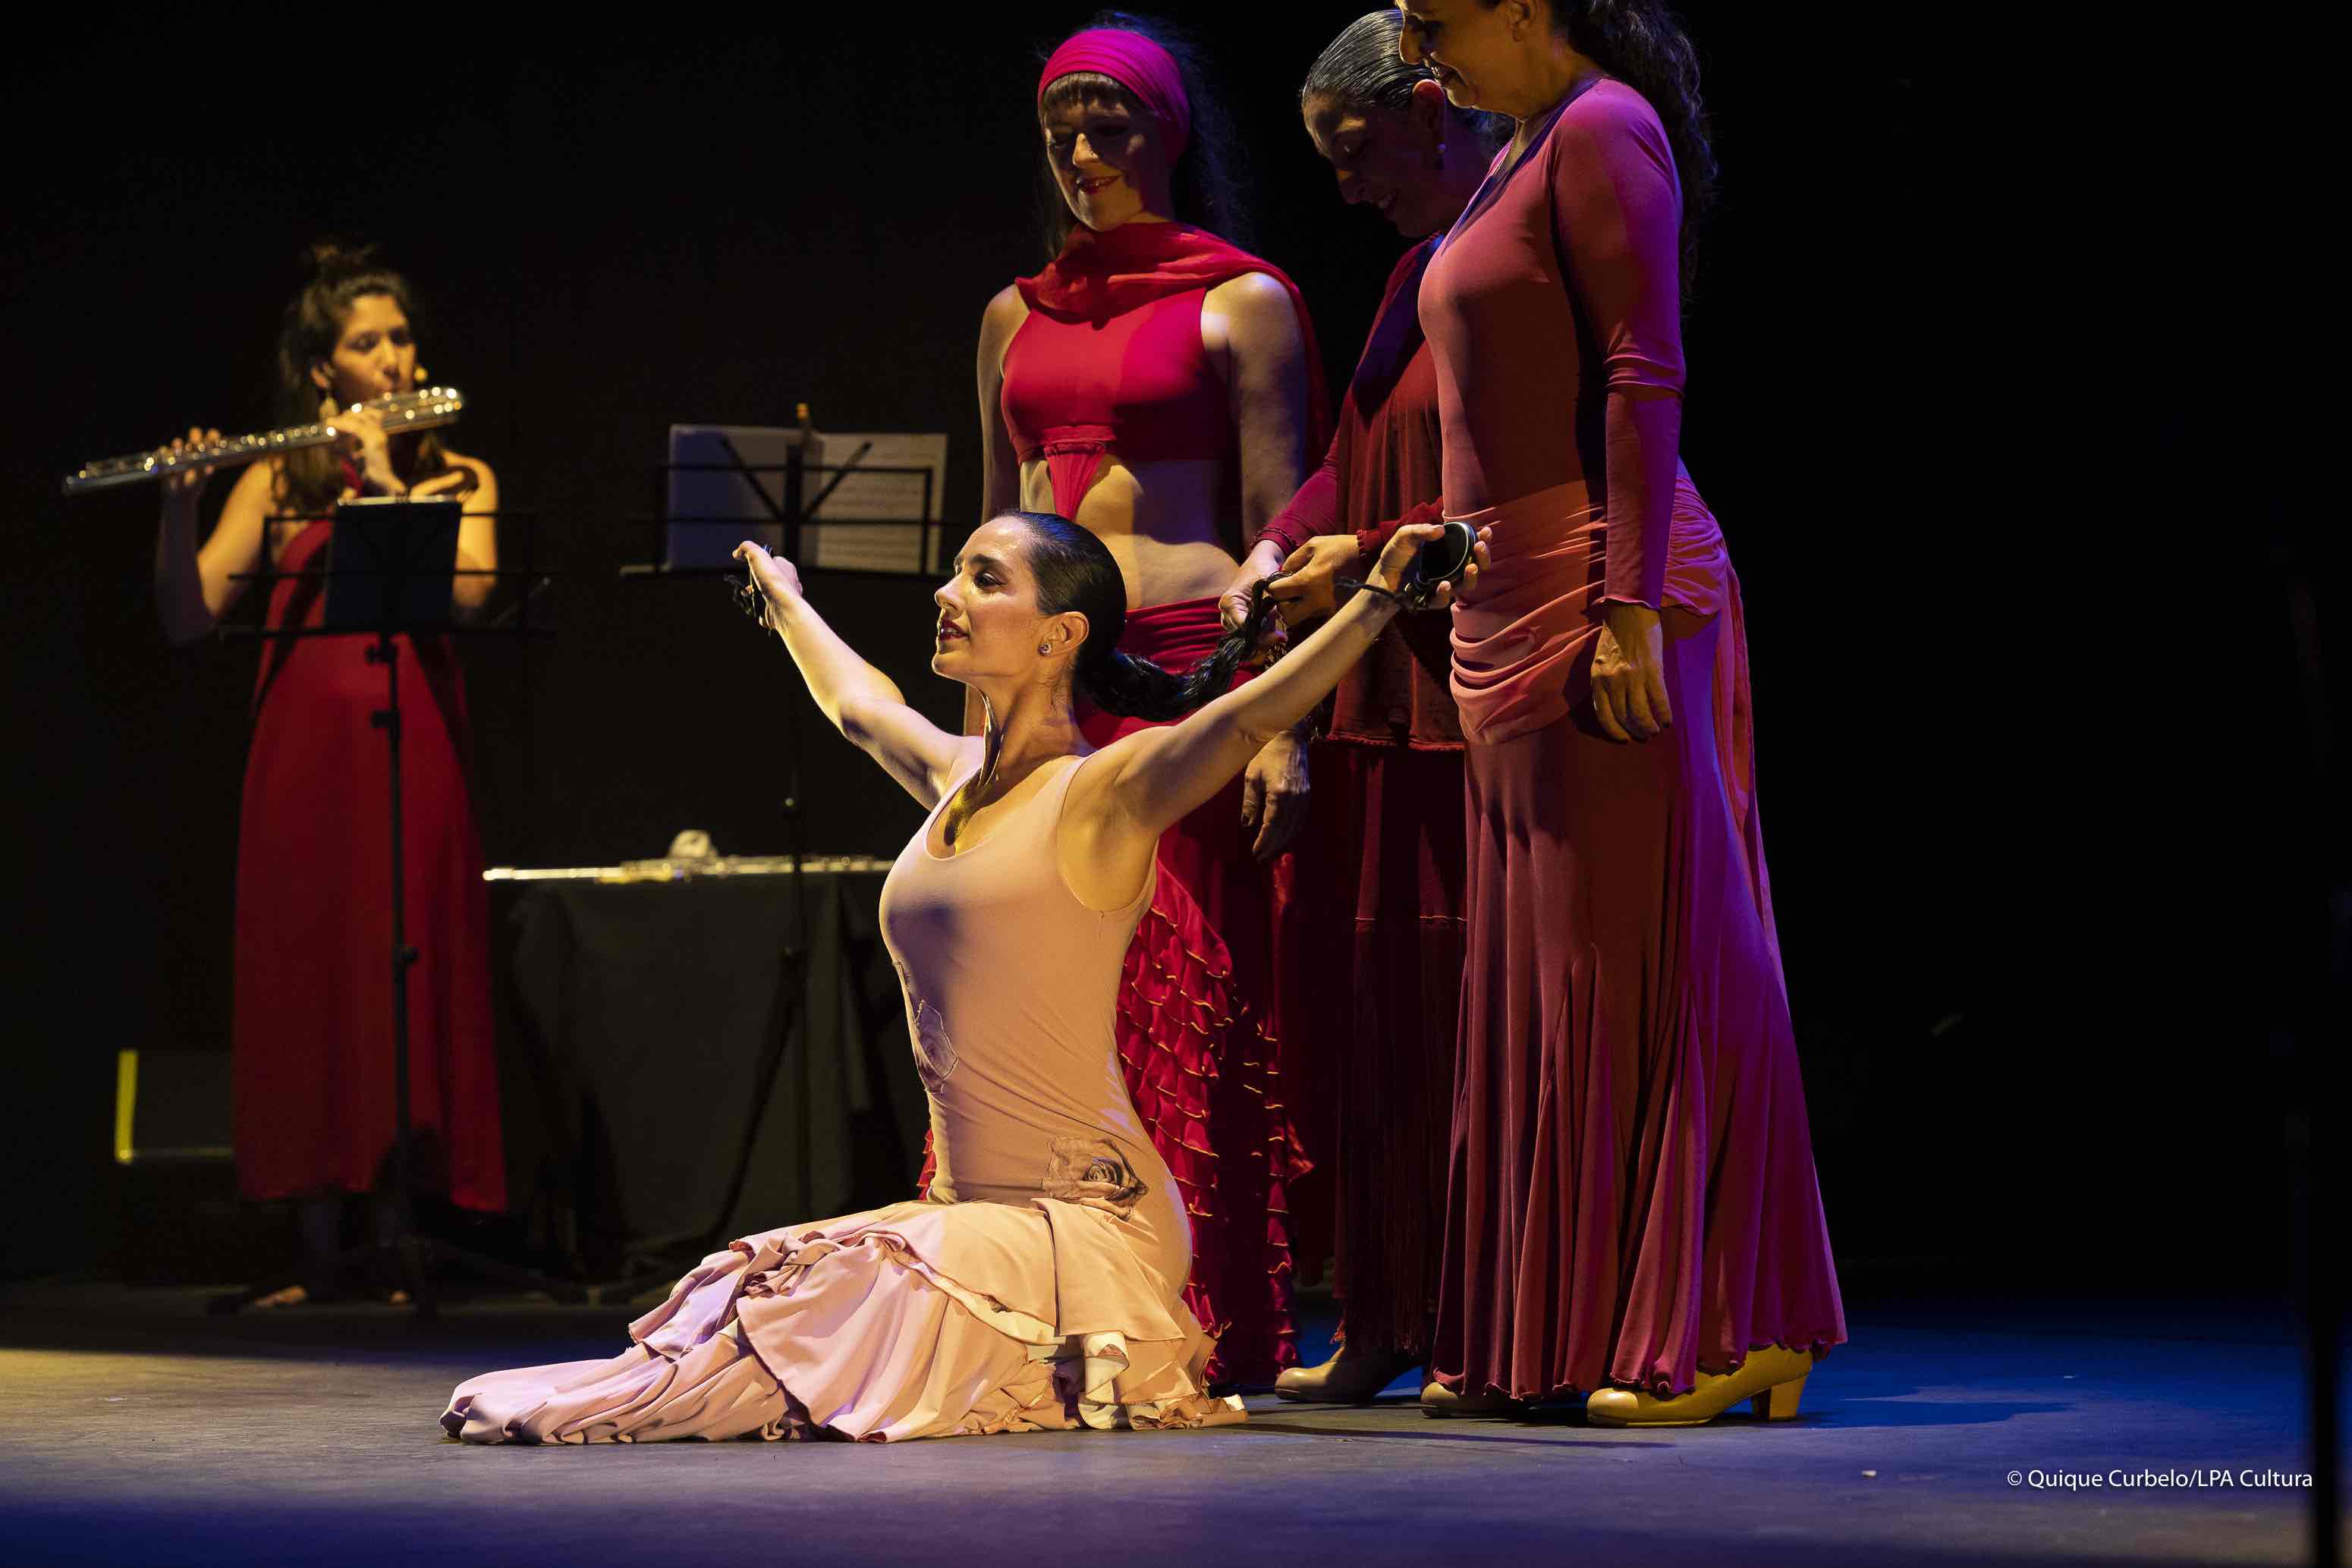 17.09.22. Las Palmas de Gran Canaria. Festival Teatro, Música y Danza (TEMUDAS). Rocio Pozo. Mujer Flamenco. Teatro Guiniguada. Foto Quique Curbelo